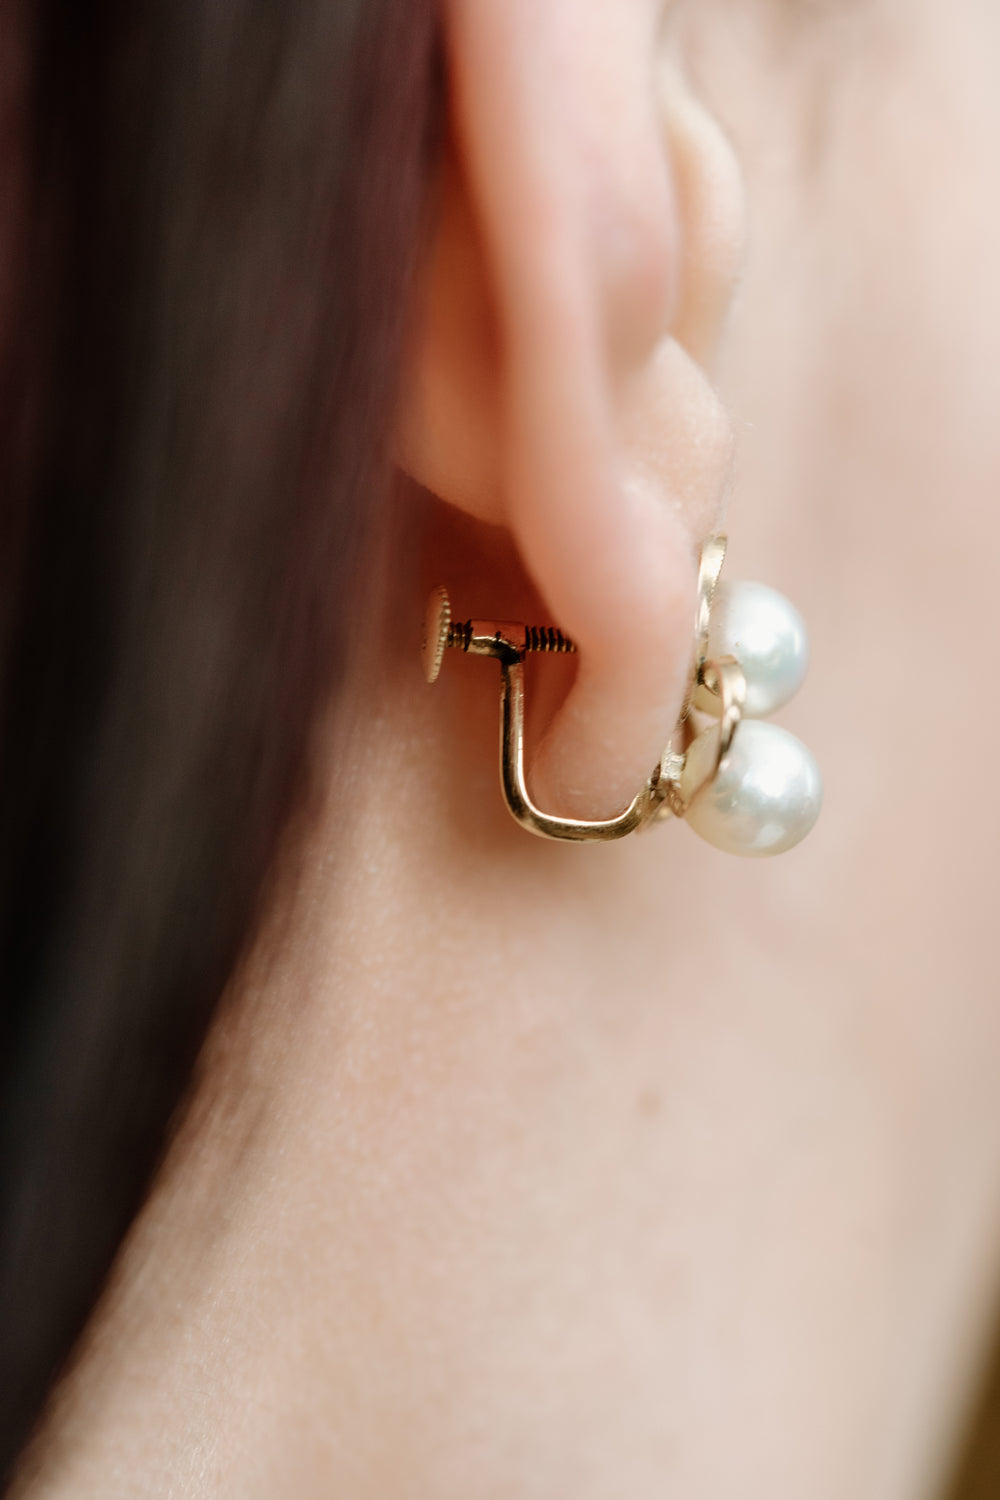 2 Pearl Earrings